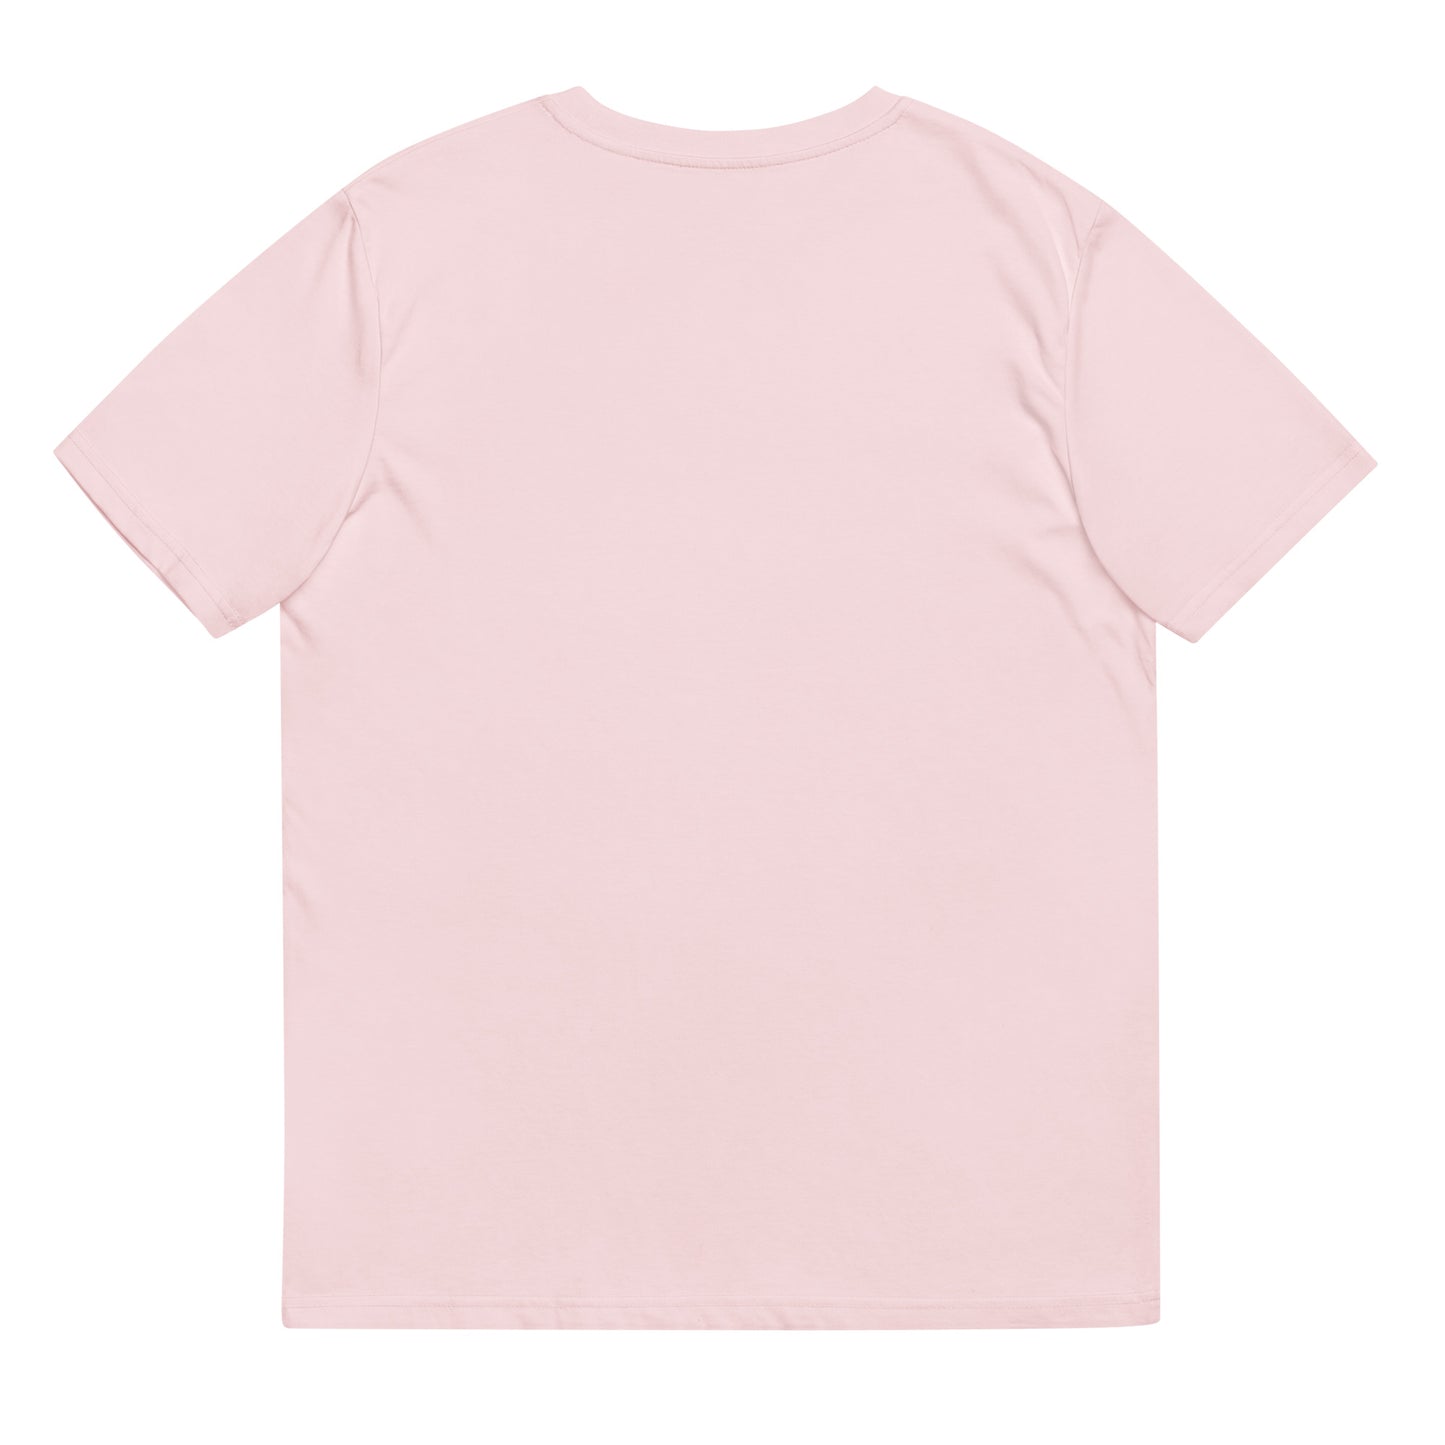 Camiseta Sakura en bordado